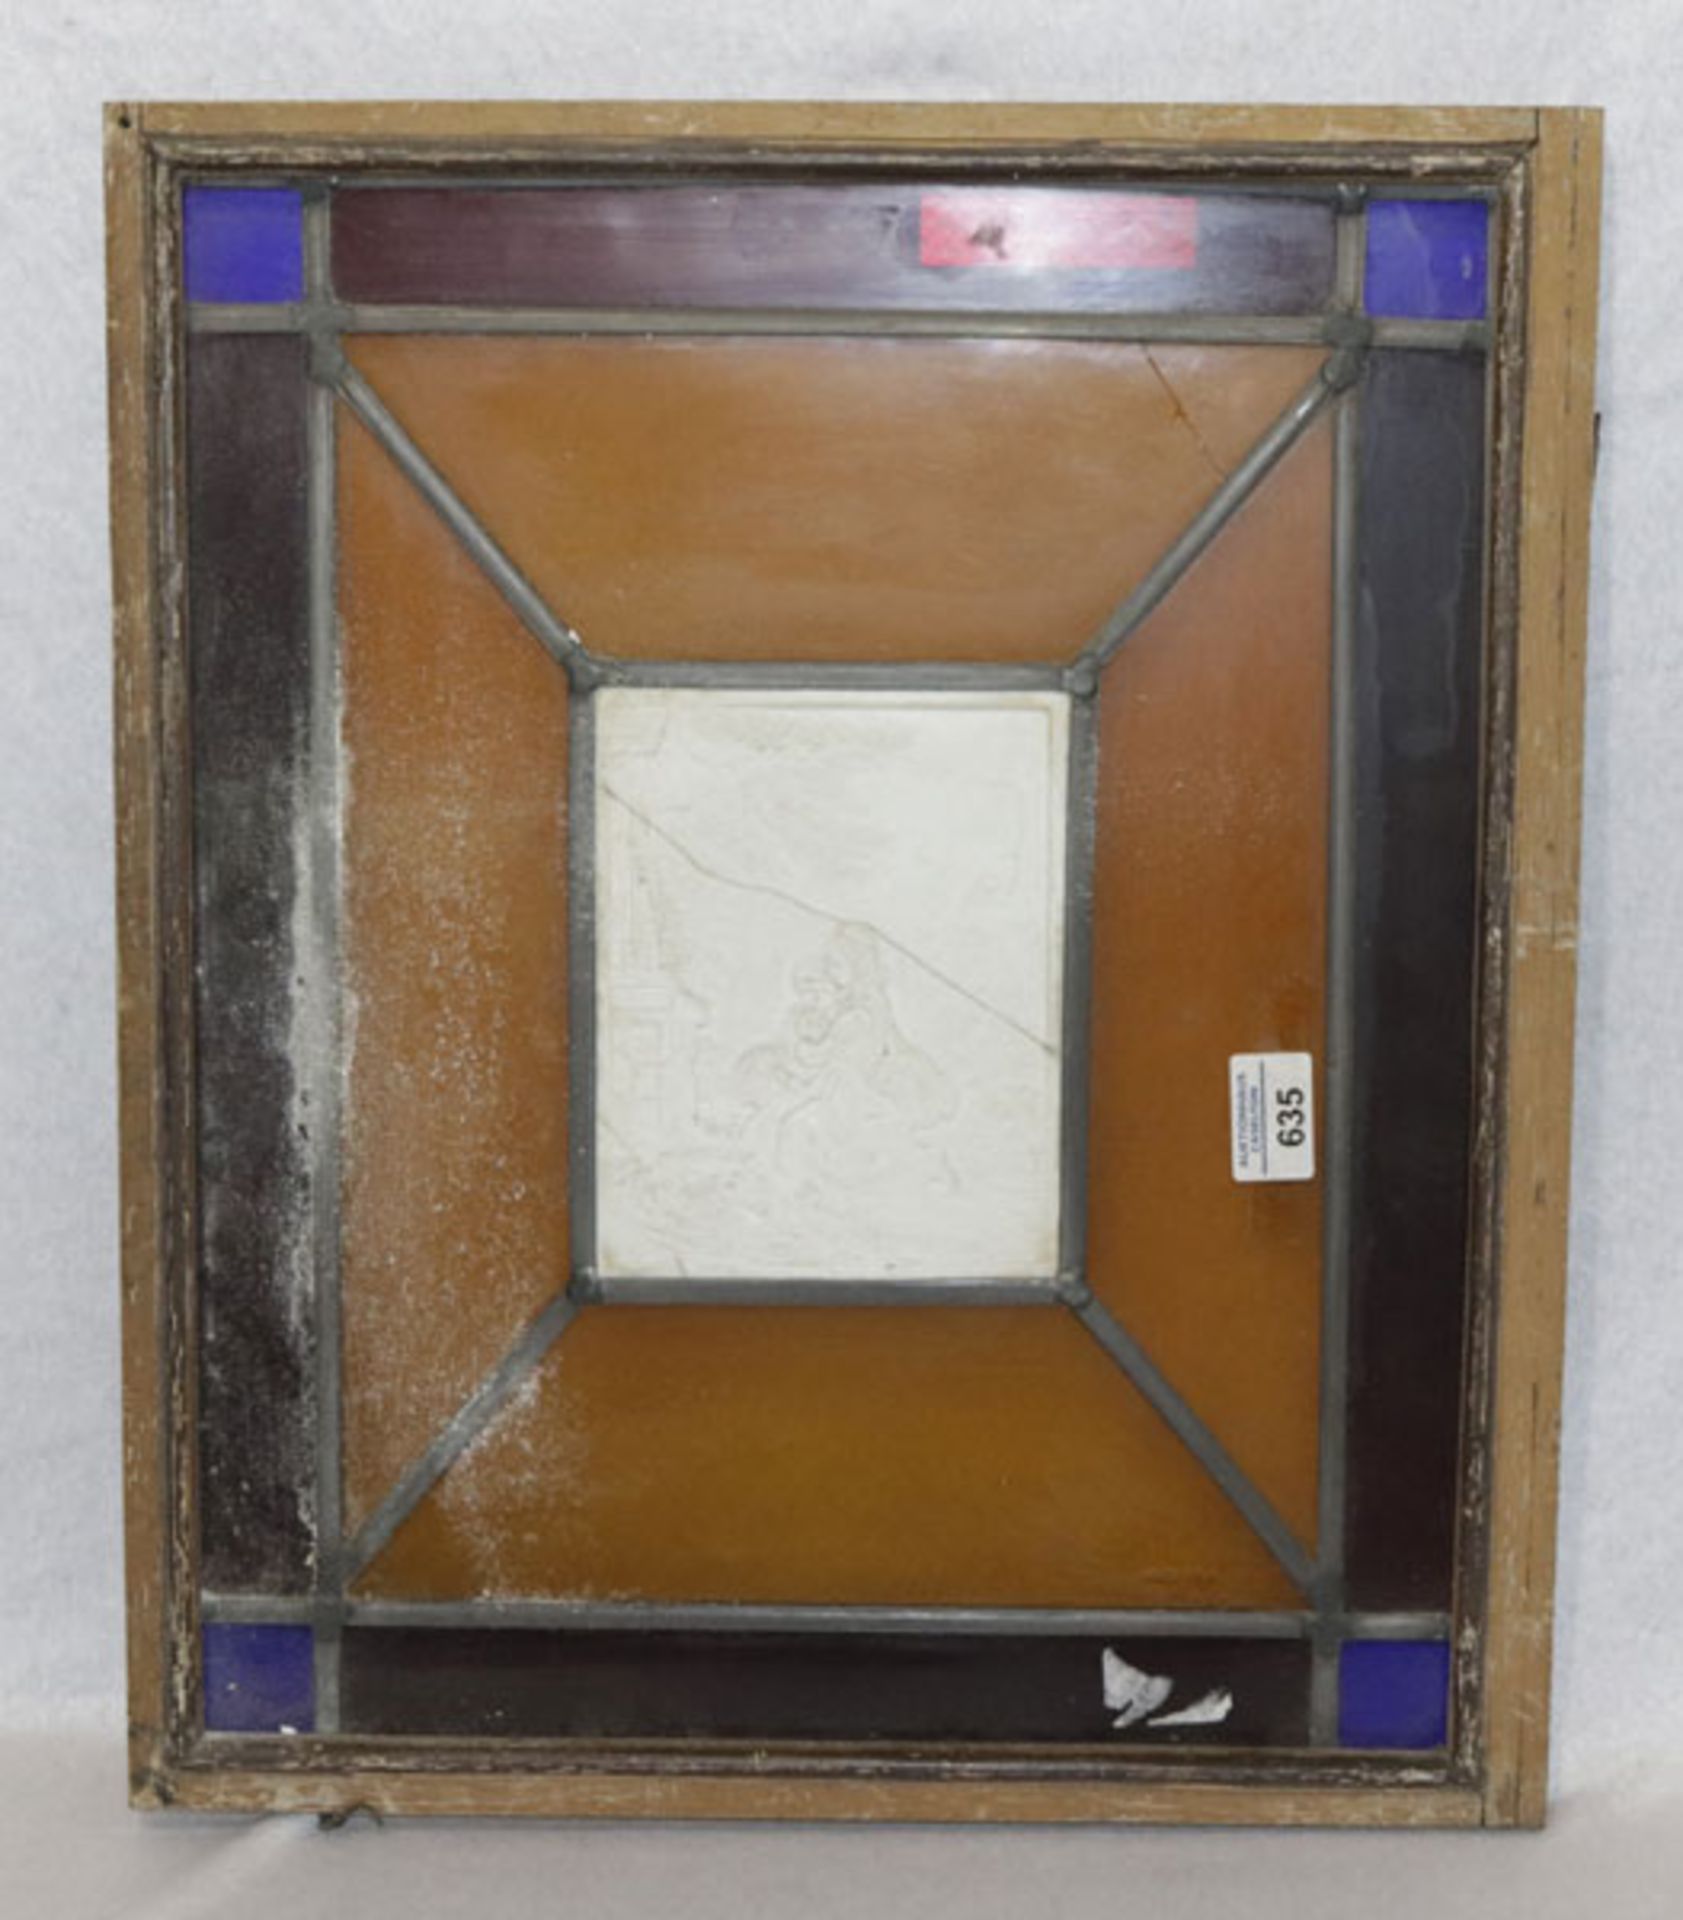 Bleiverglasung mit Porzellanbild, teils gesprungen, 51 cm x 43 cm, zum Versand nicht geeignet, Alter